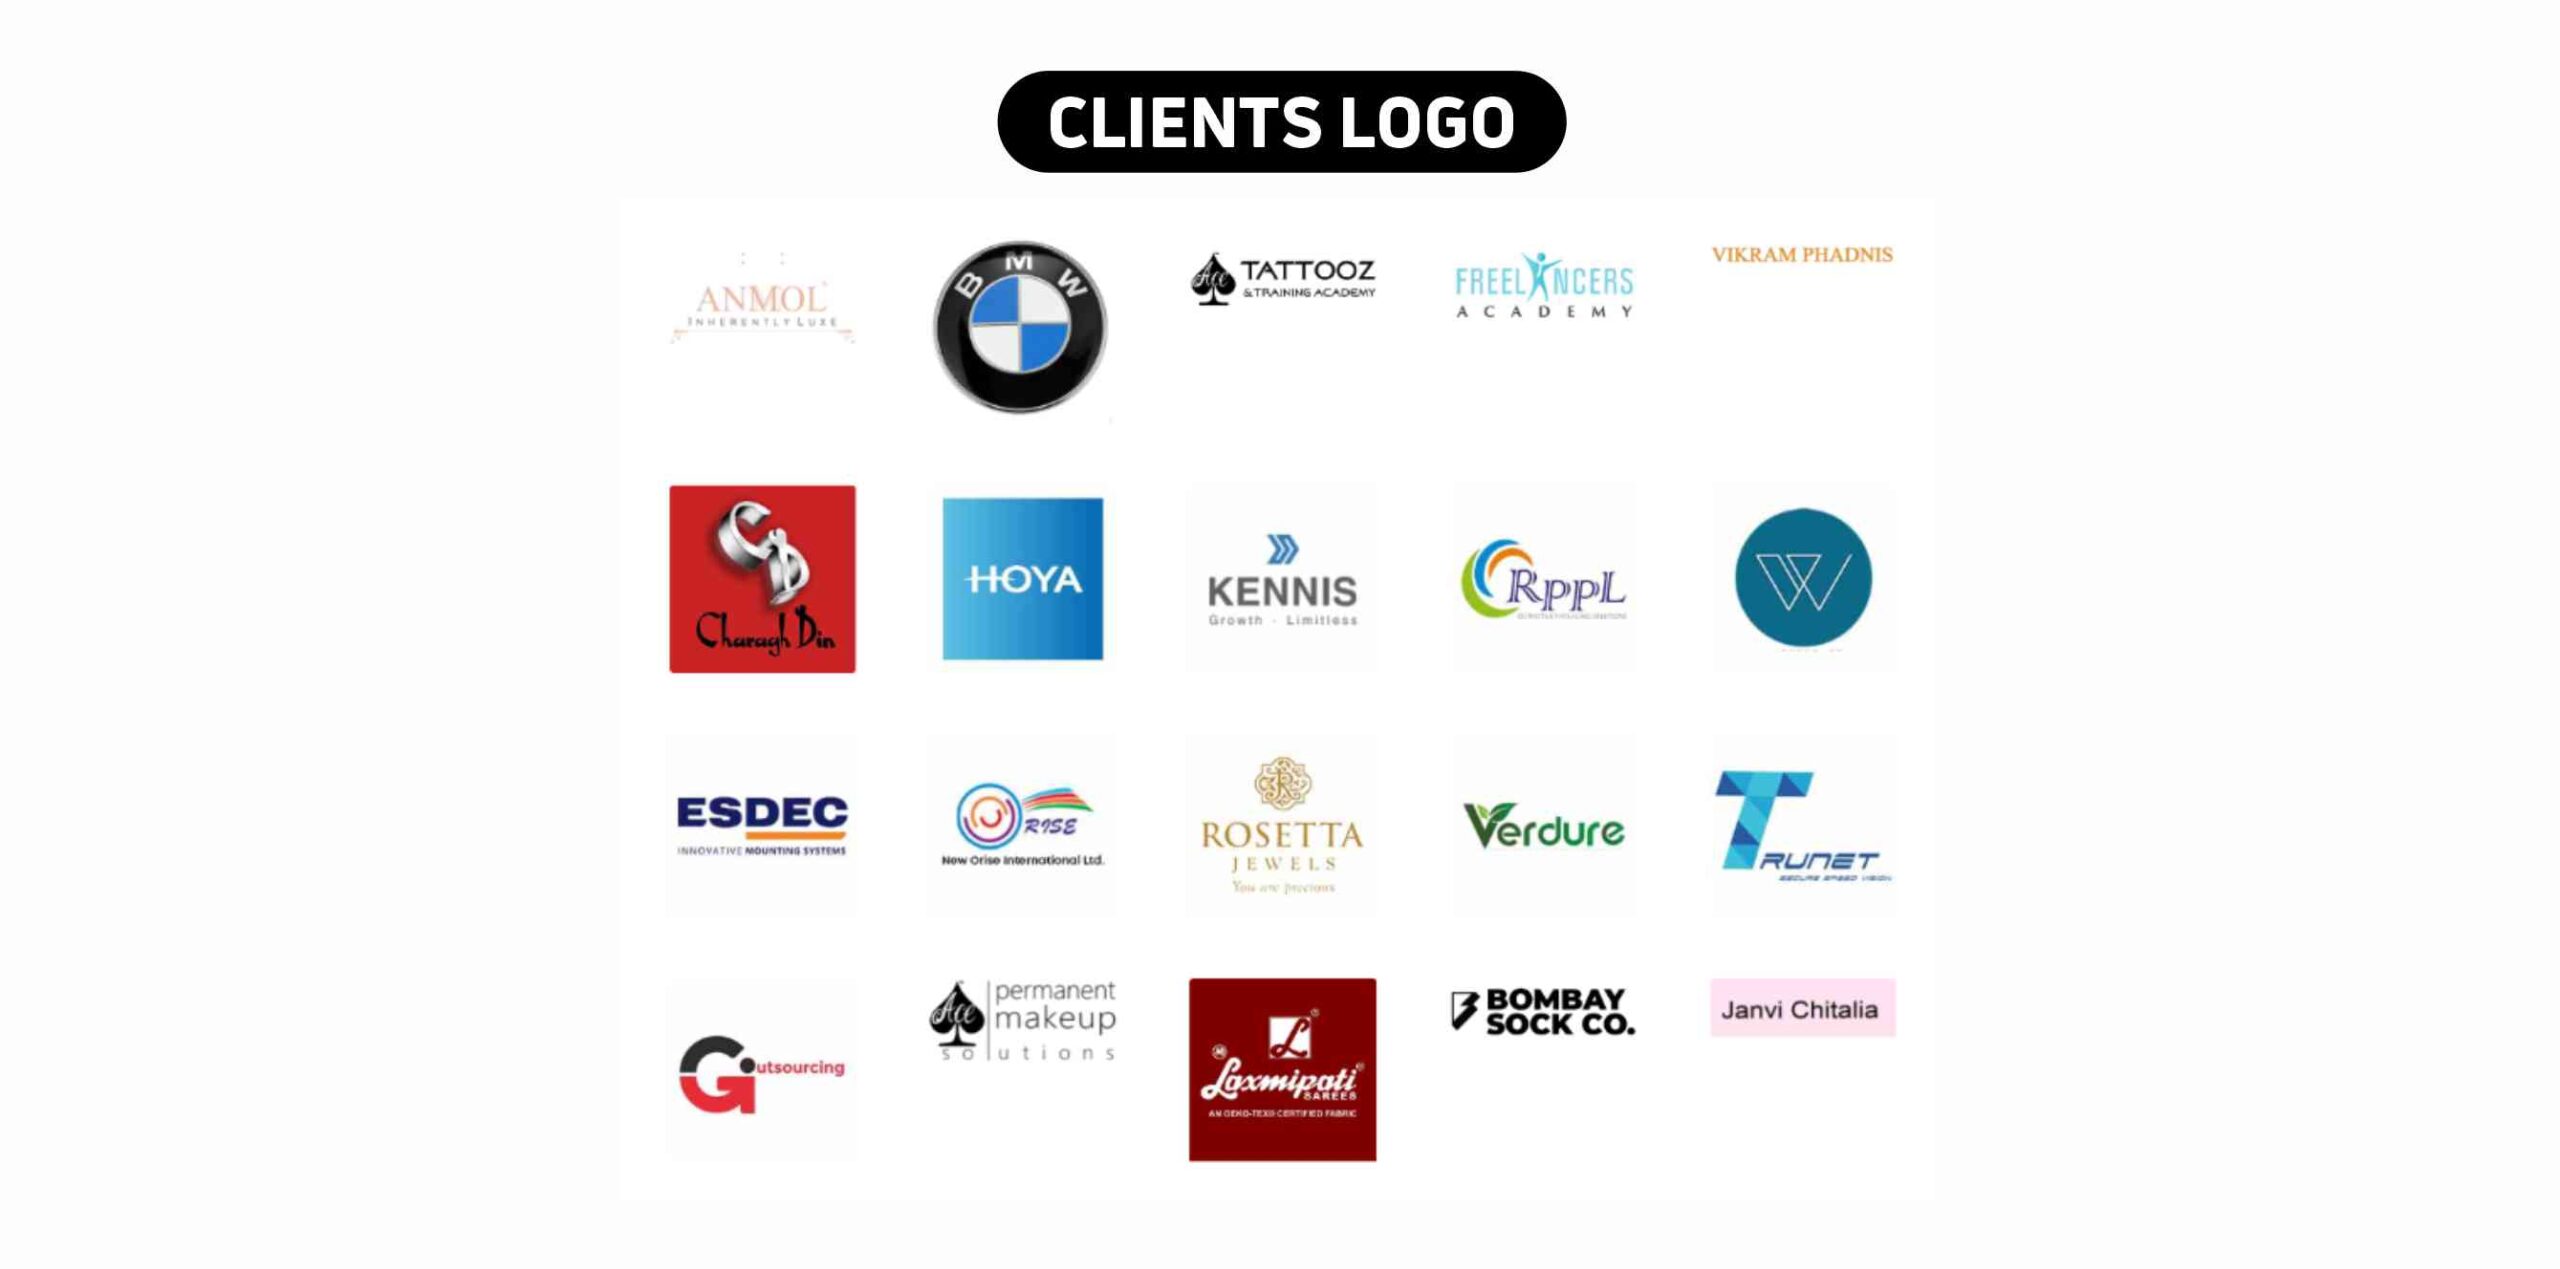 Anuva Clients Testimonial & Logo